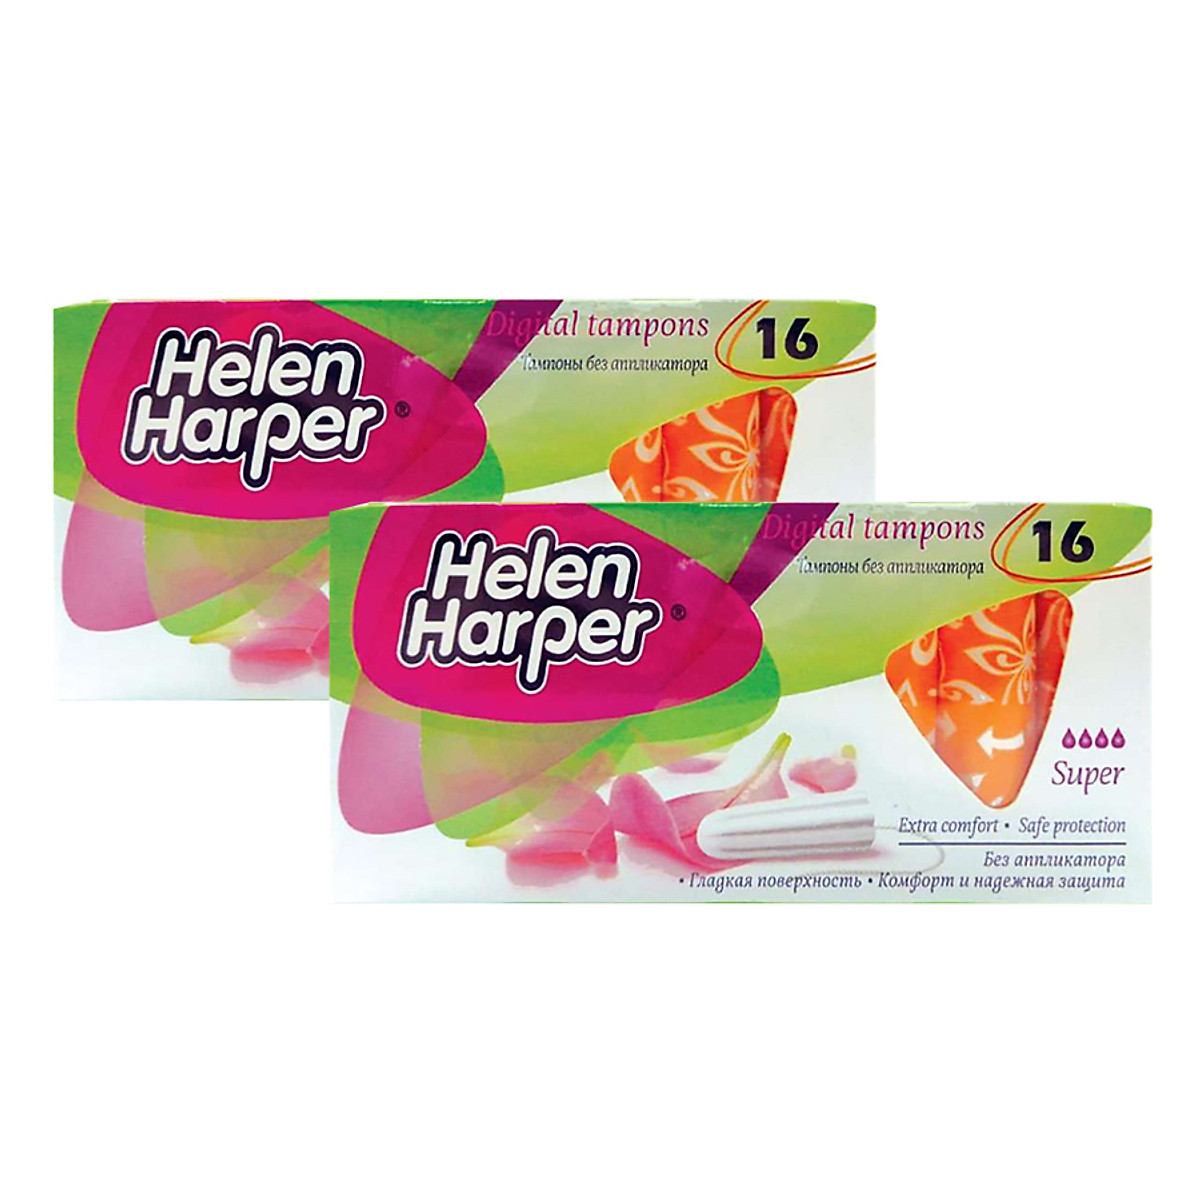 Mua Bộ 2 Hộp Băng Vệ Sinh Helen Harper TAMPON SUPPER Dạng Ống Không Cần Đẩy  Dùng Bên Trong Nhỏ Gọn (16 Miếng/ Hộp) | Tiki